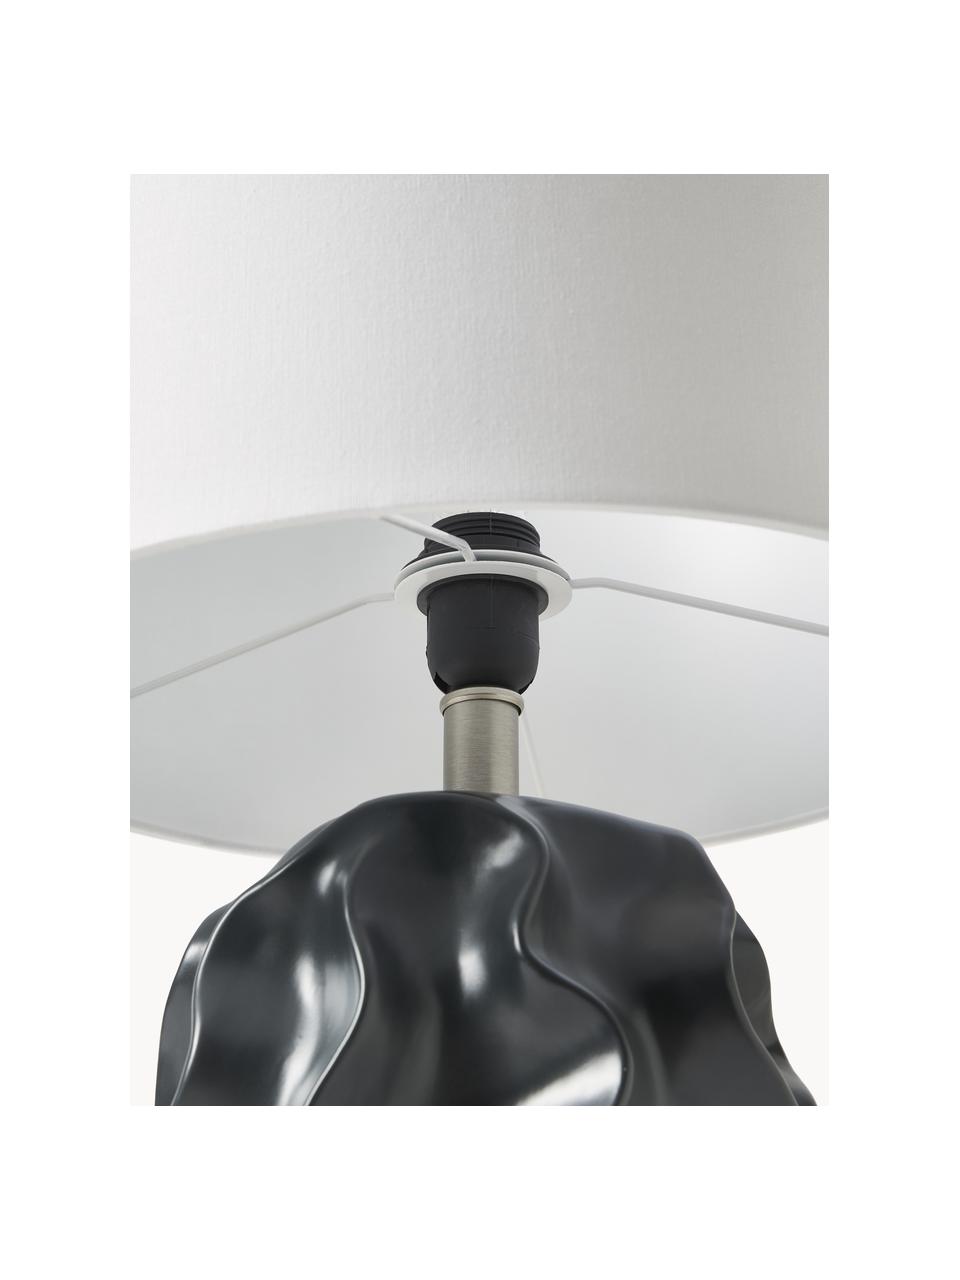 Große Tischlampe Parker mit Keramikfuß, Lampenschirm: Leinen, Lampenfuß: Keramik, Weiß, Schwarz, Ø 36 x H 63 cm